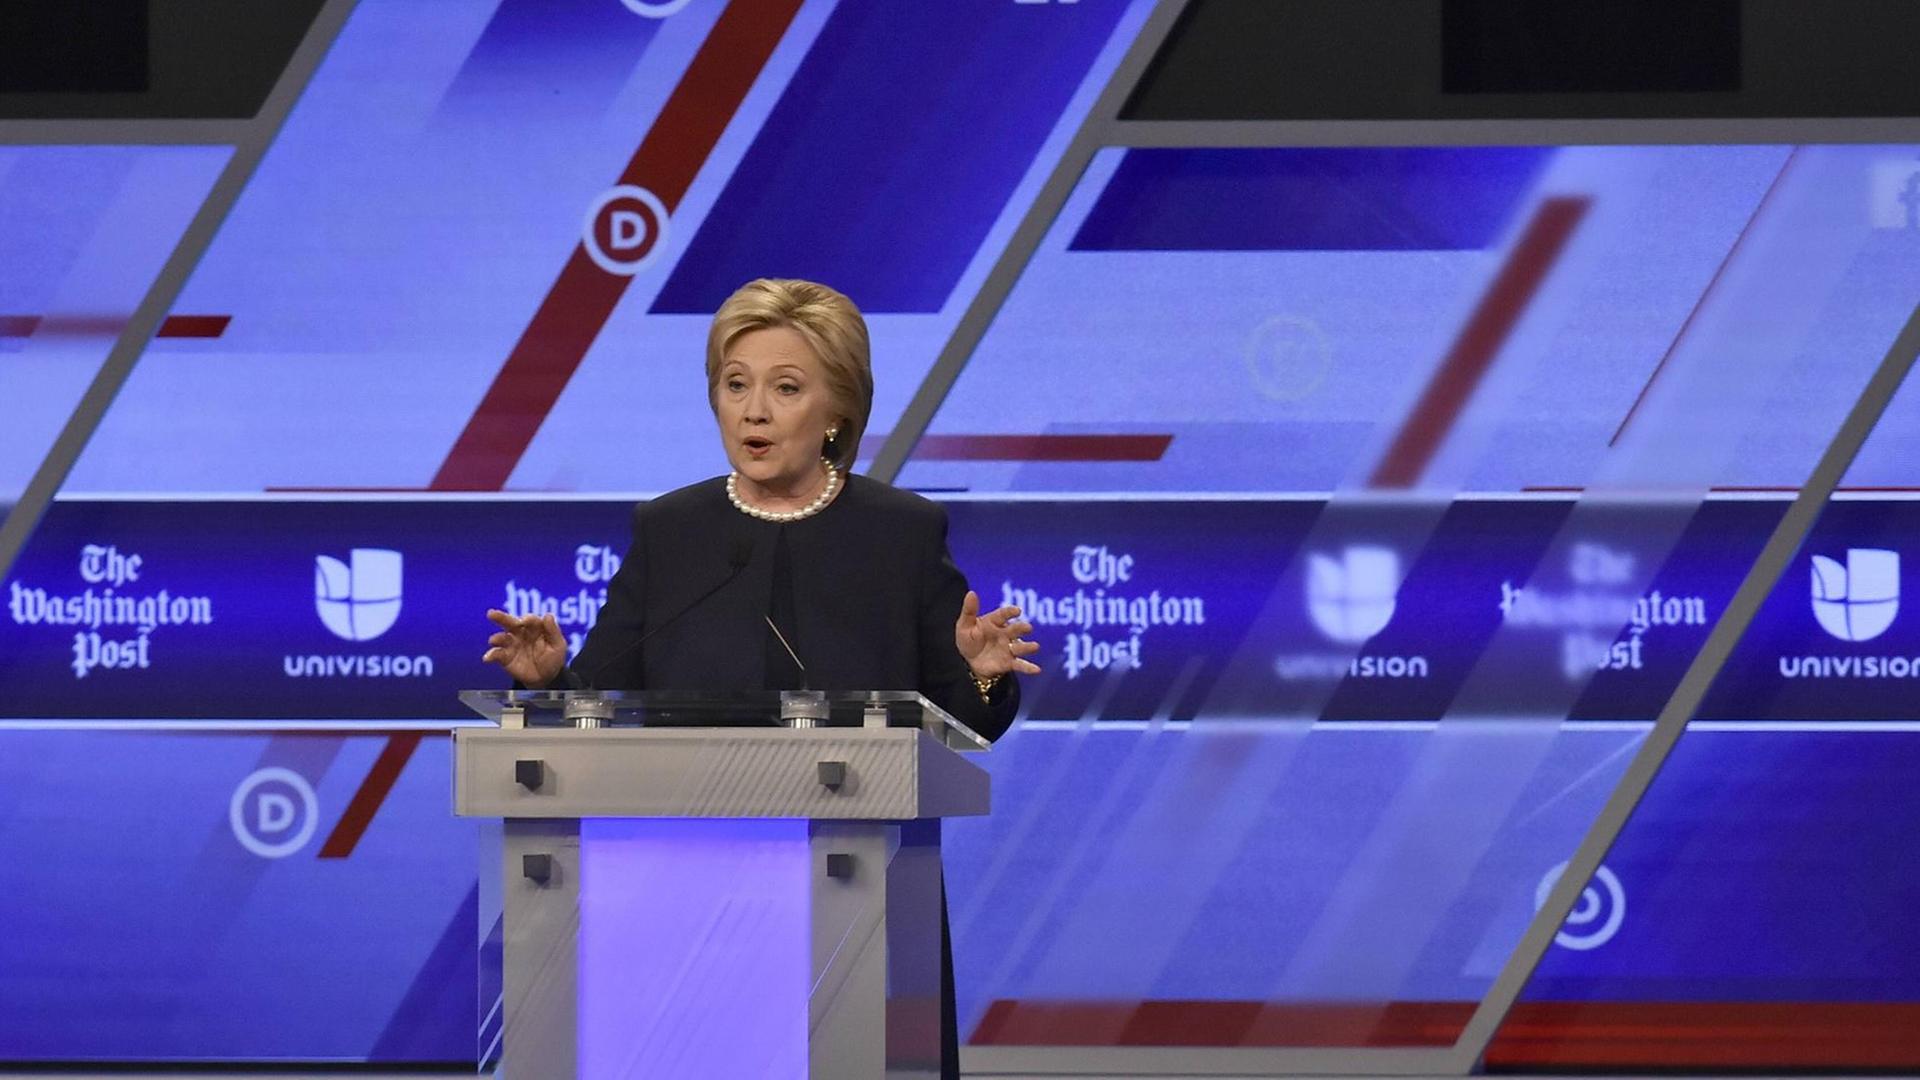 Hillary Clinton antwortet auf einer Veranstaltung der "Washington Post" und des Senders Univision in Florida auf eine Frage.